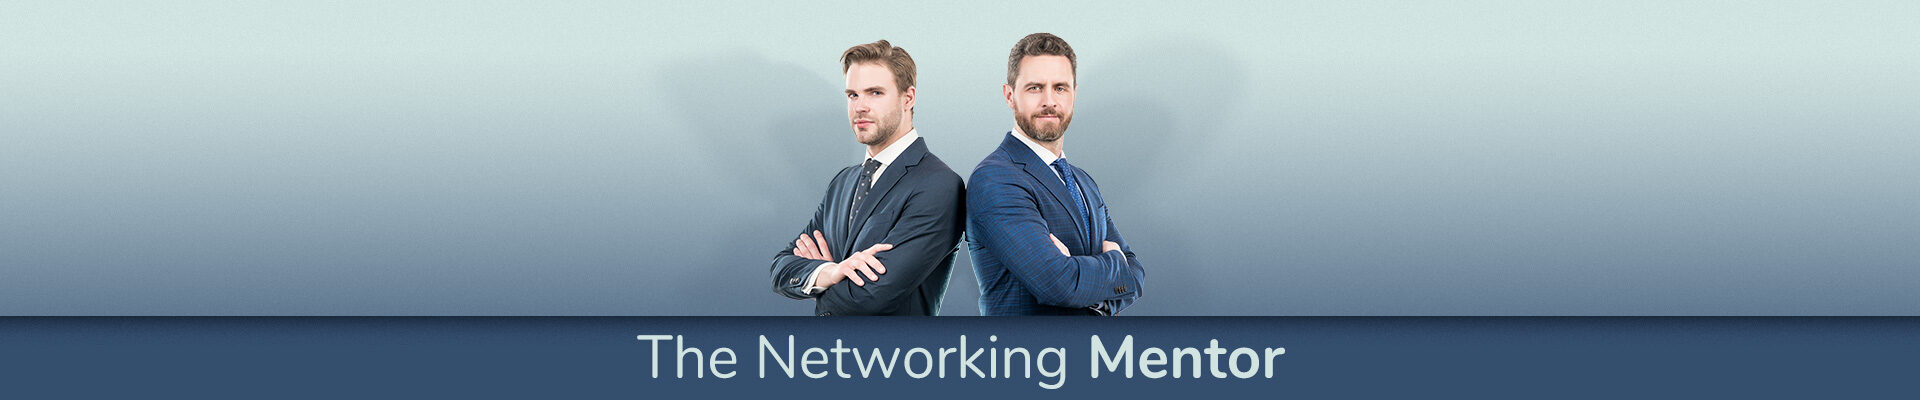 The Networking Mentor, di Ivan Misner e C.G. Cooper